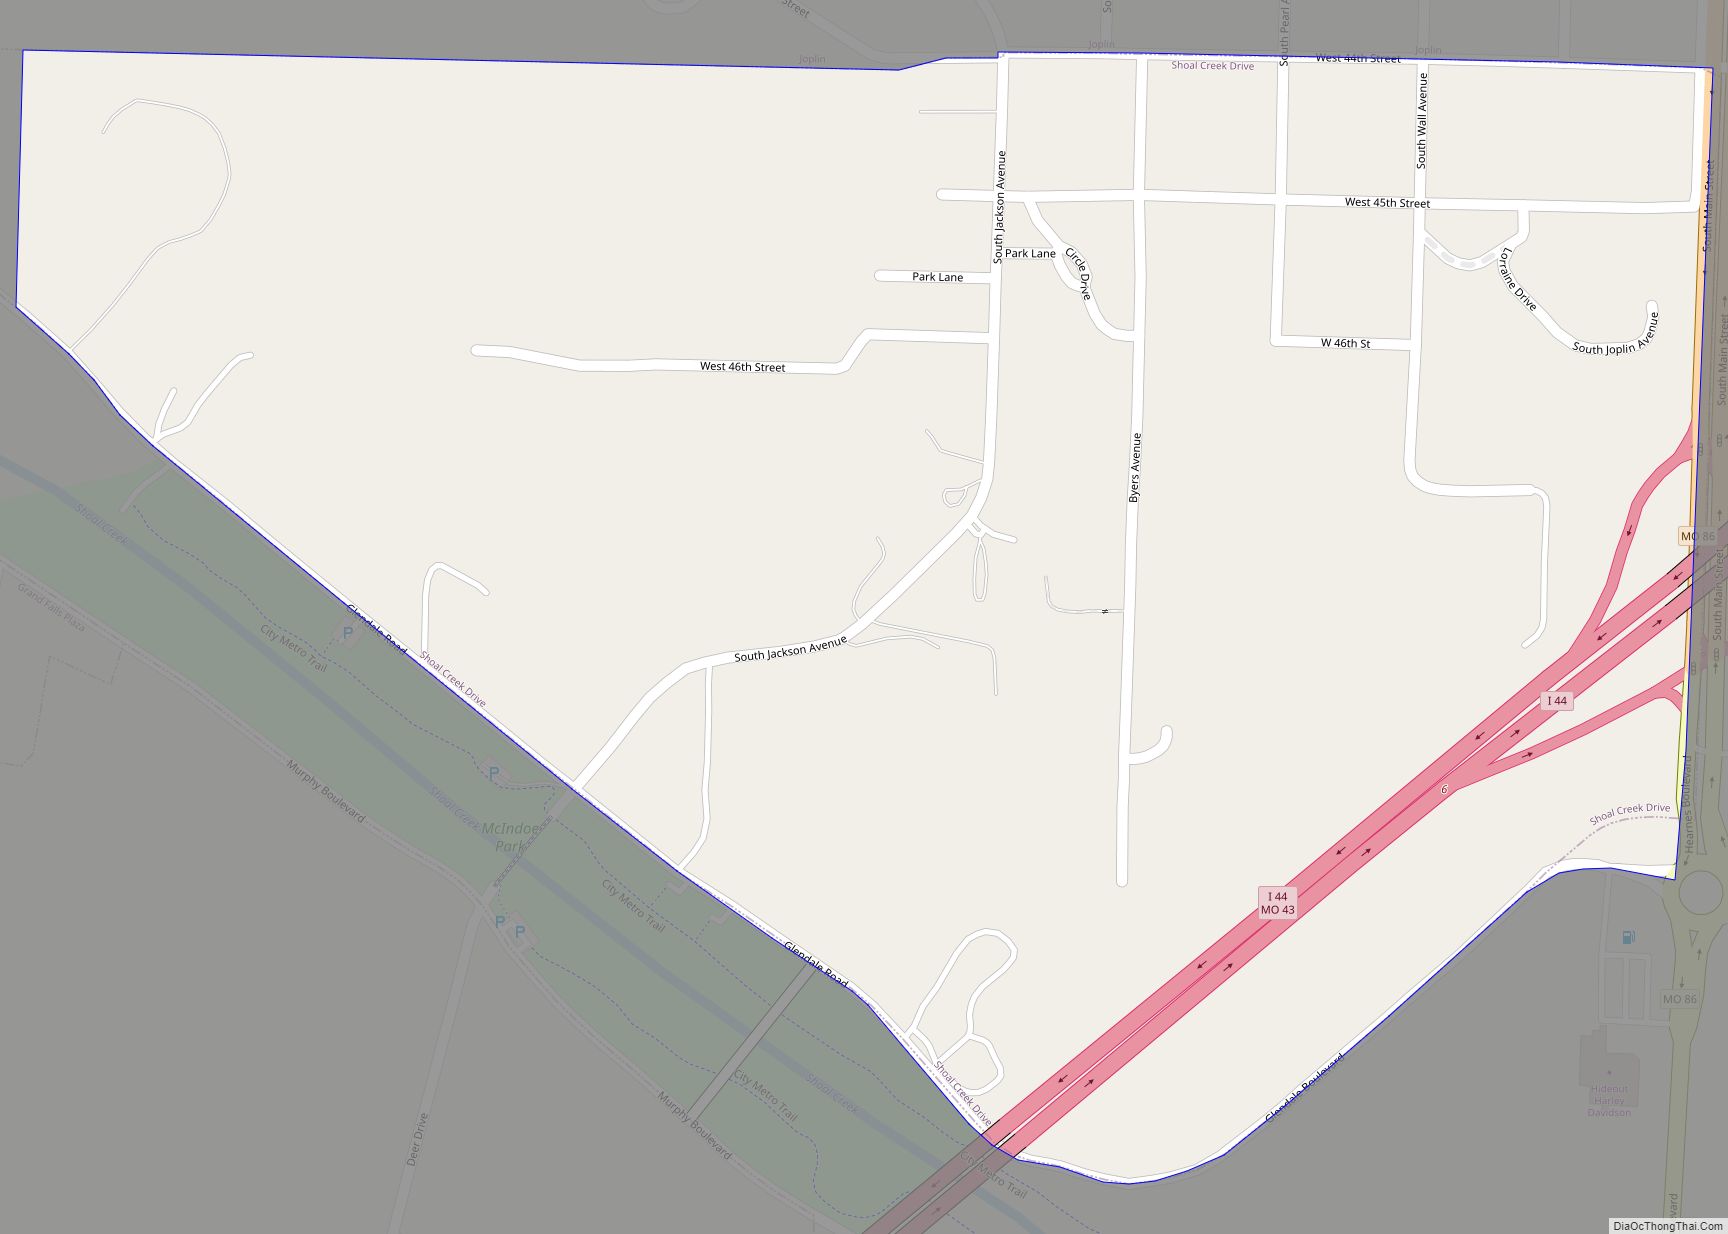 Map of Shoal Creek Drive village